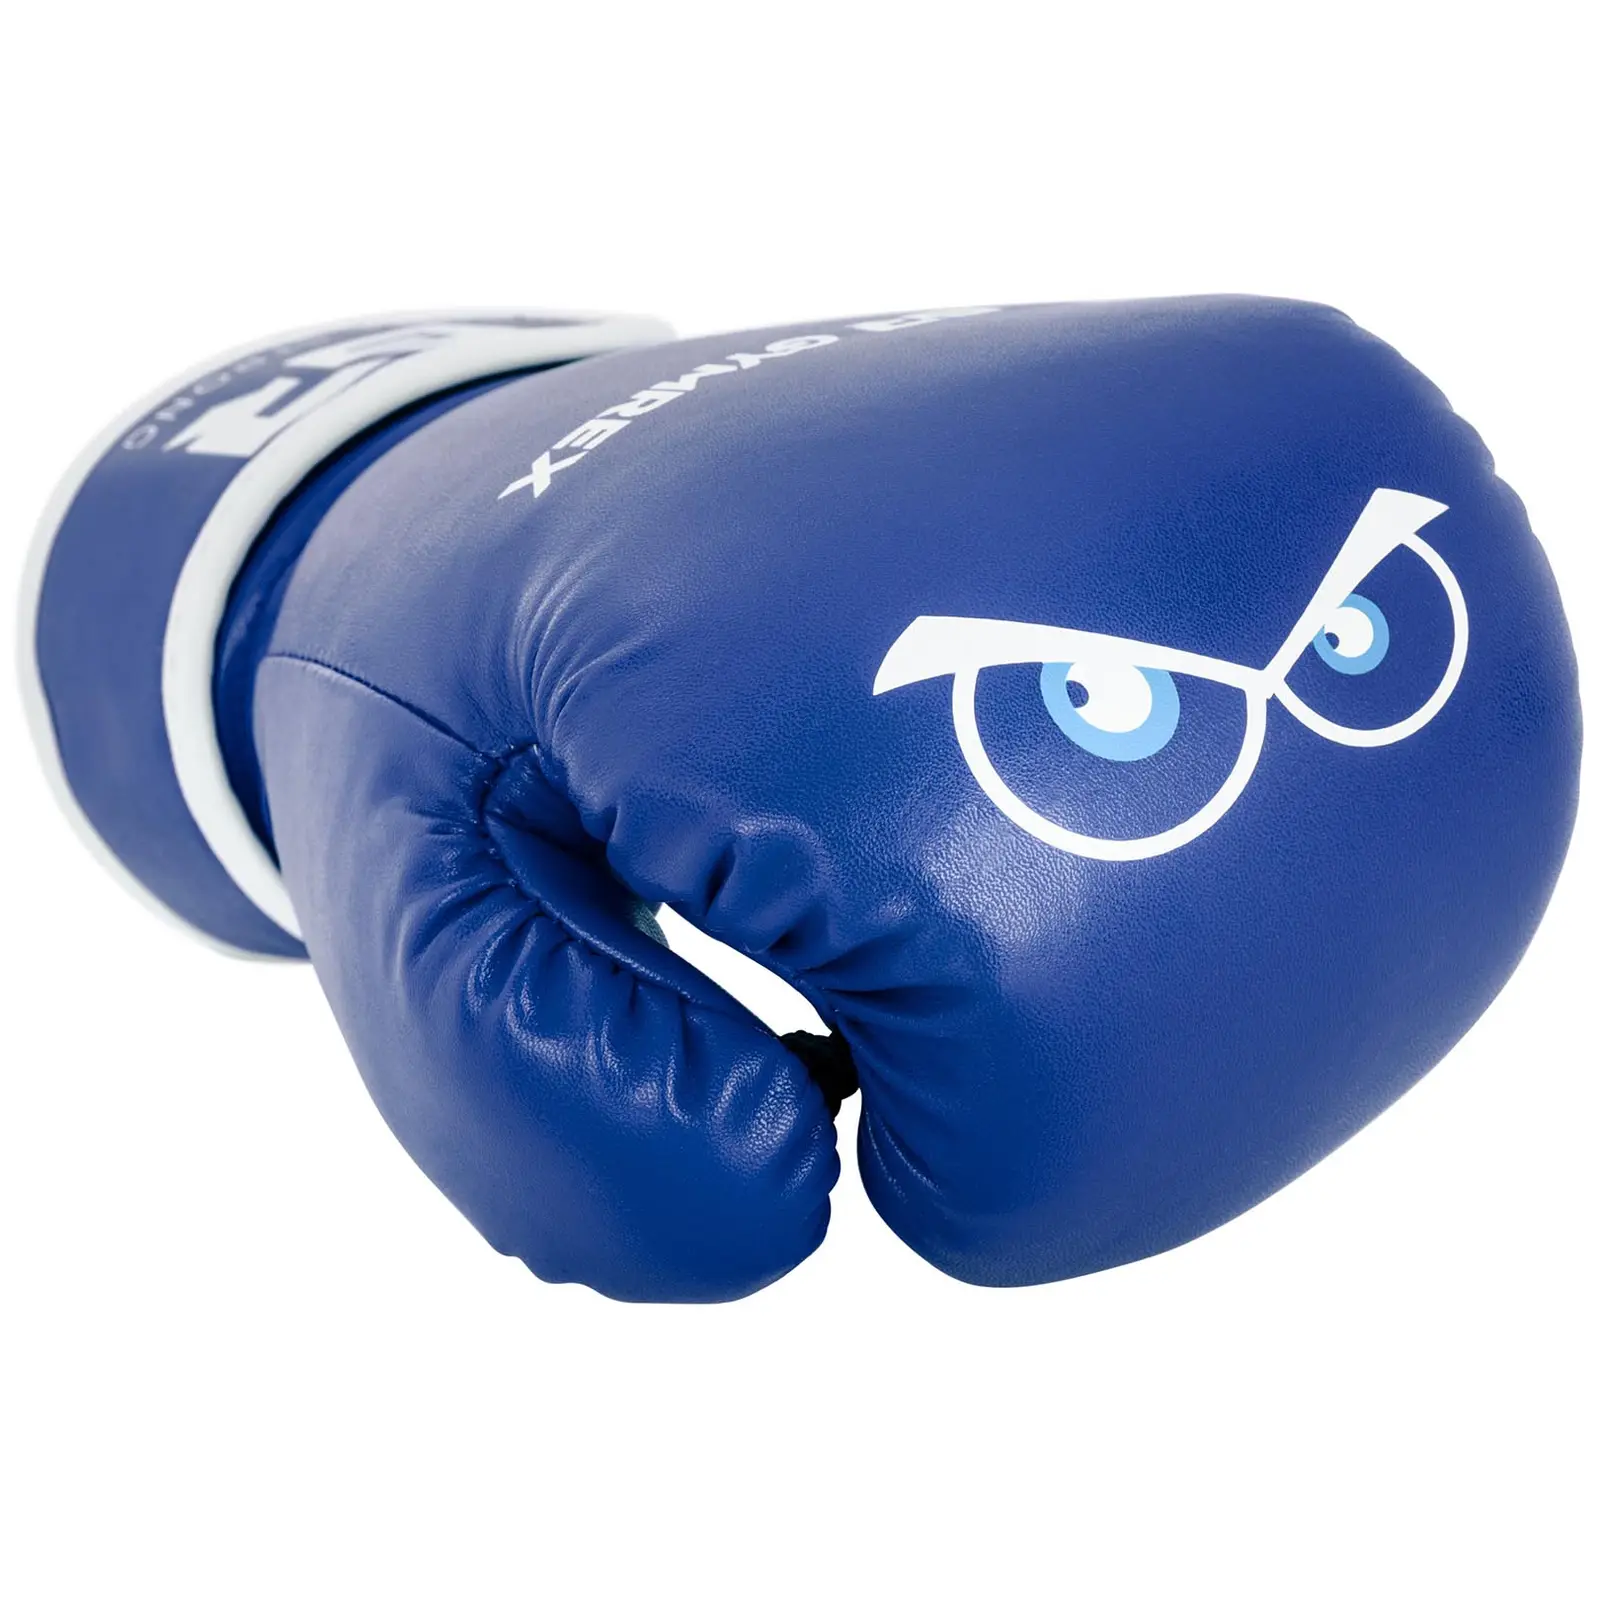 Dětské boxerské rukavice - 4 oz - modré